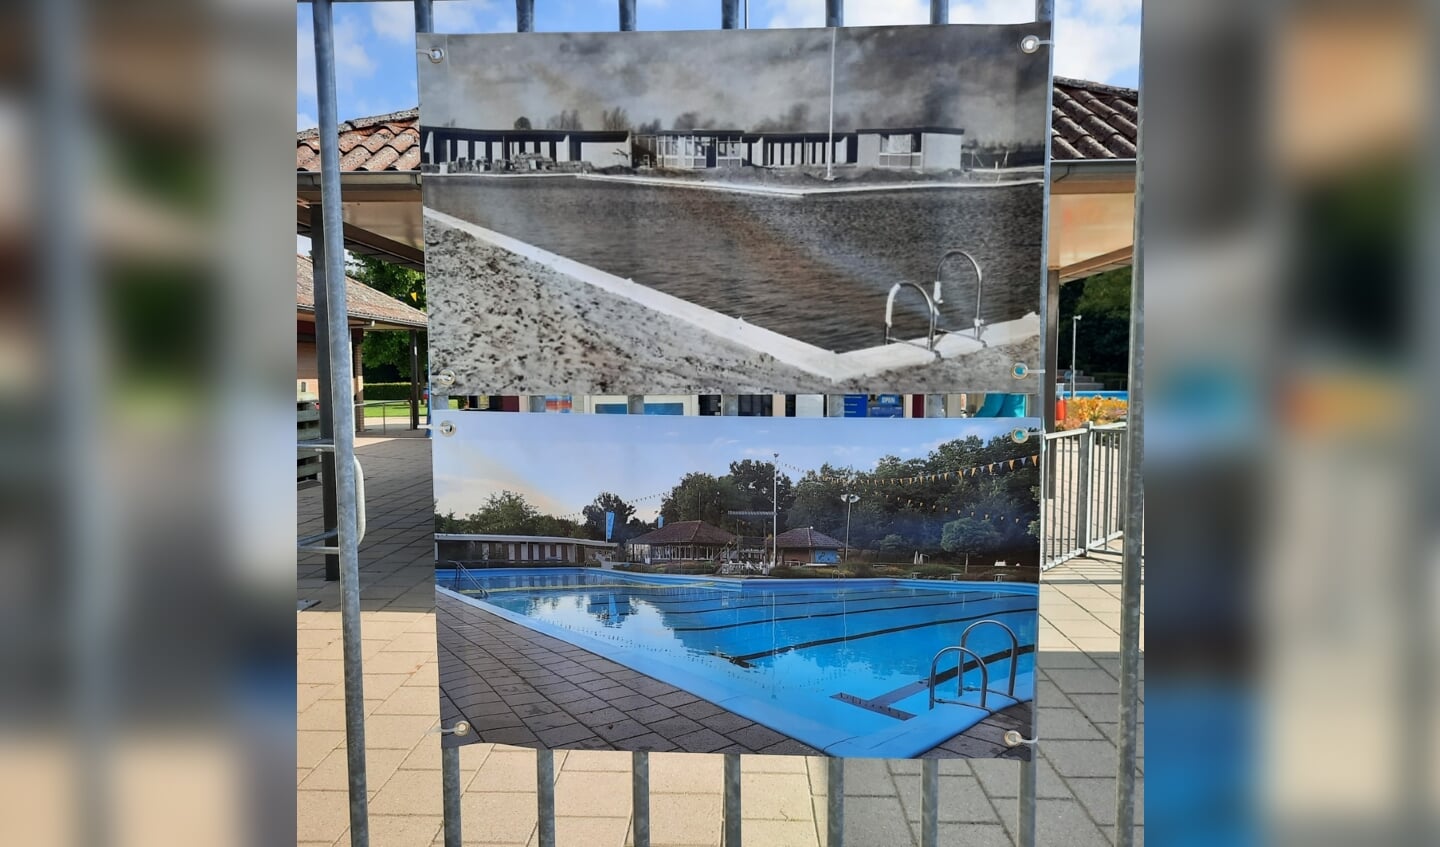 Fotodoek: het zwembad in Steenderen toen en nu. Foto: PR Zwembad Steenderen